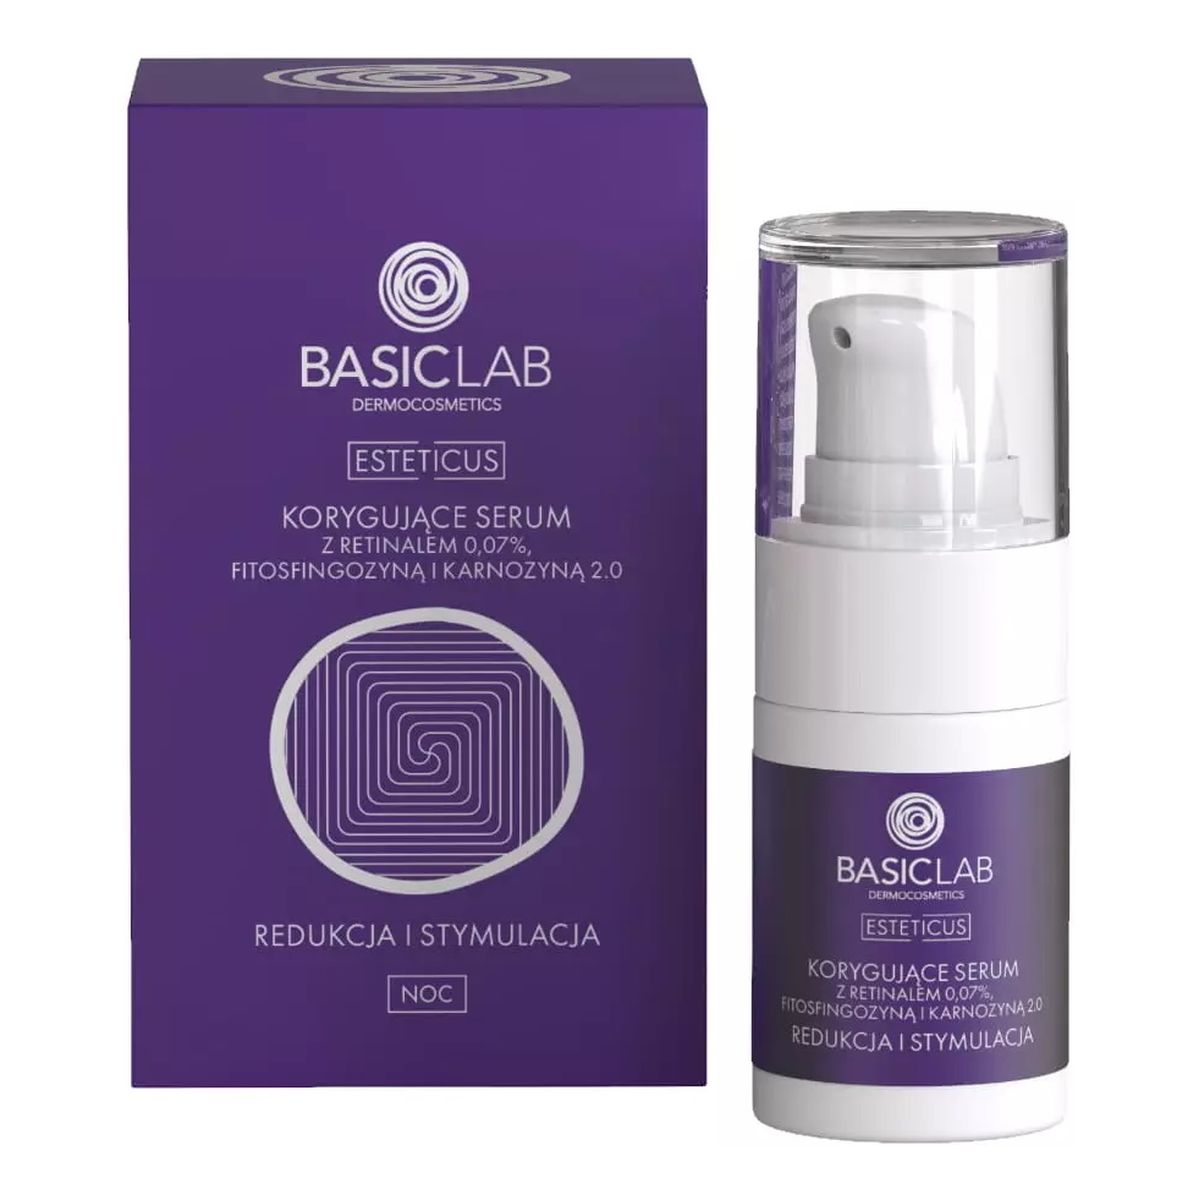 Basiclab Esteticus korygujące serum z retinalem 0.07% fitosfingozyną i karnozyną 2.0 redukcja i stymulacja 15ml